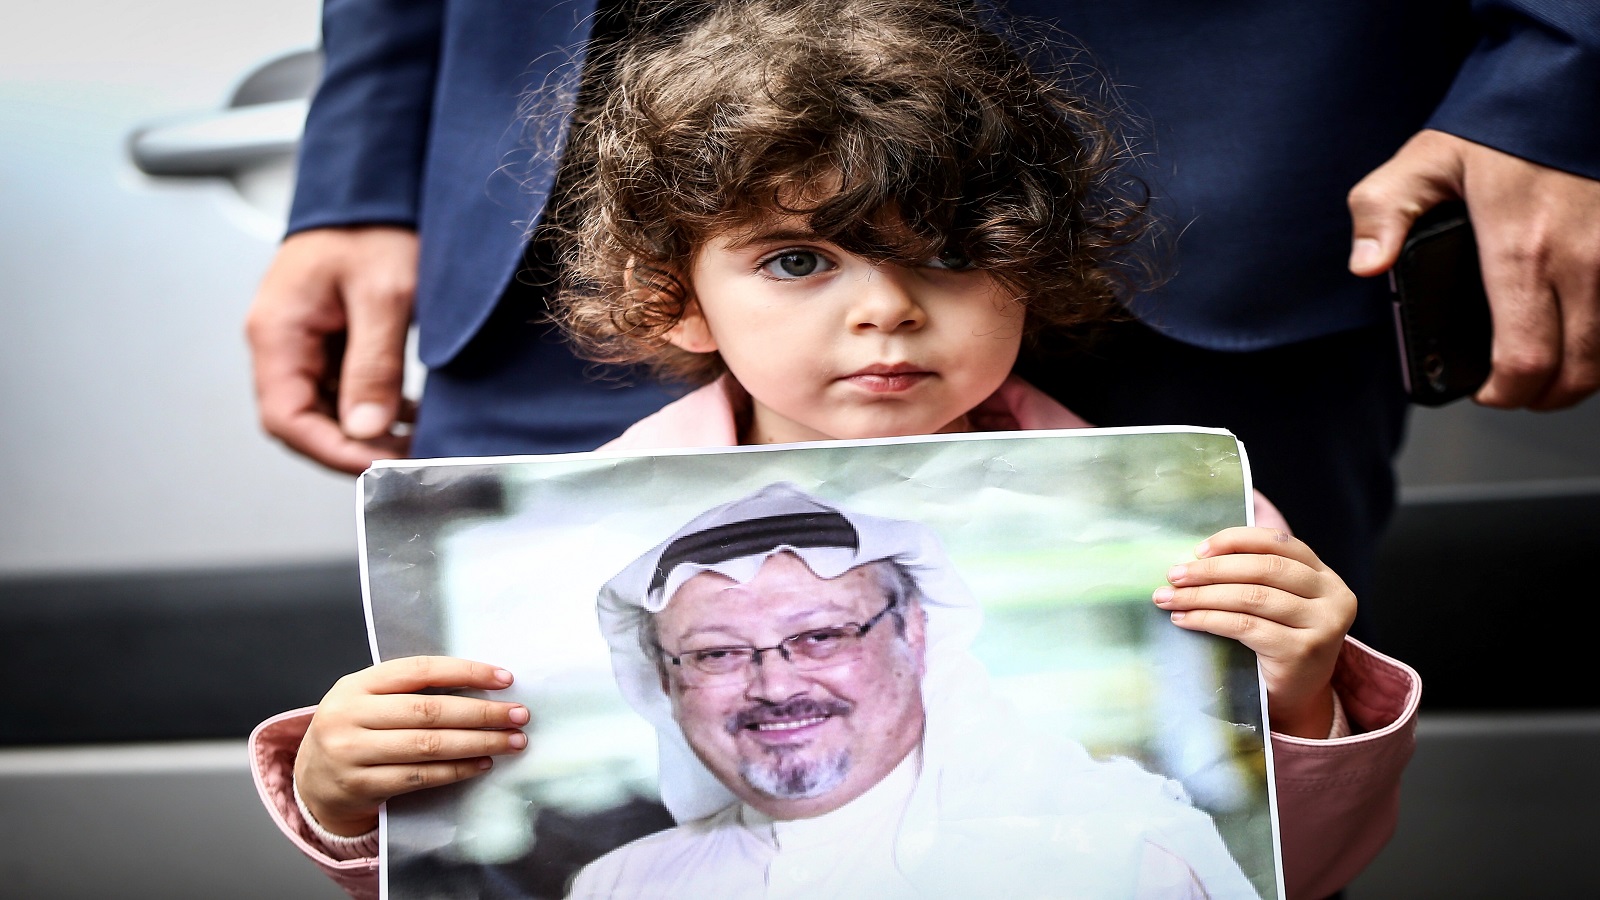 نيويورك تايمز:مخبر سعودي مزروع في شركة تويتر..والخاشقجي ضحيته